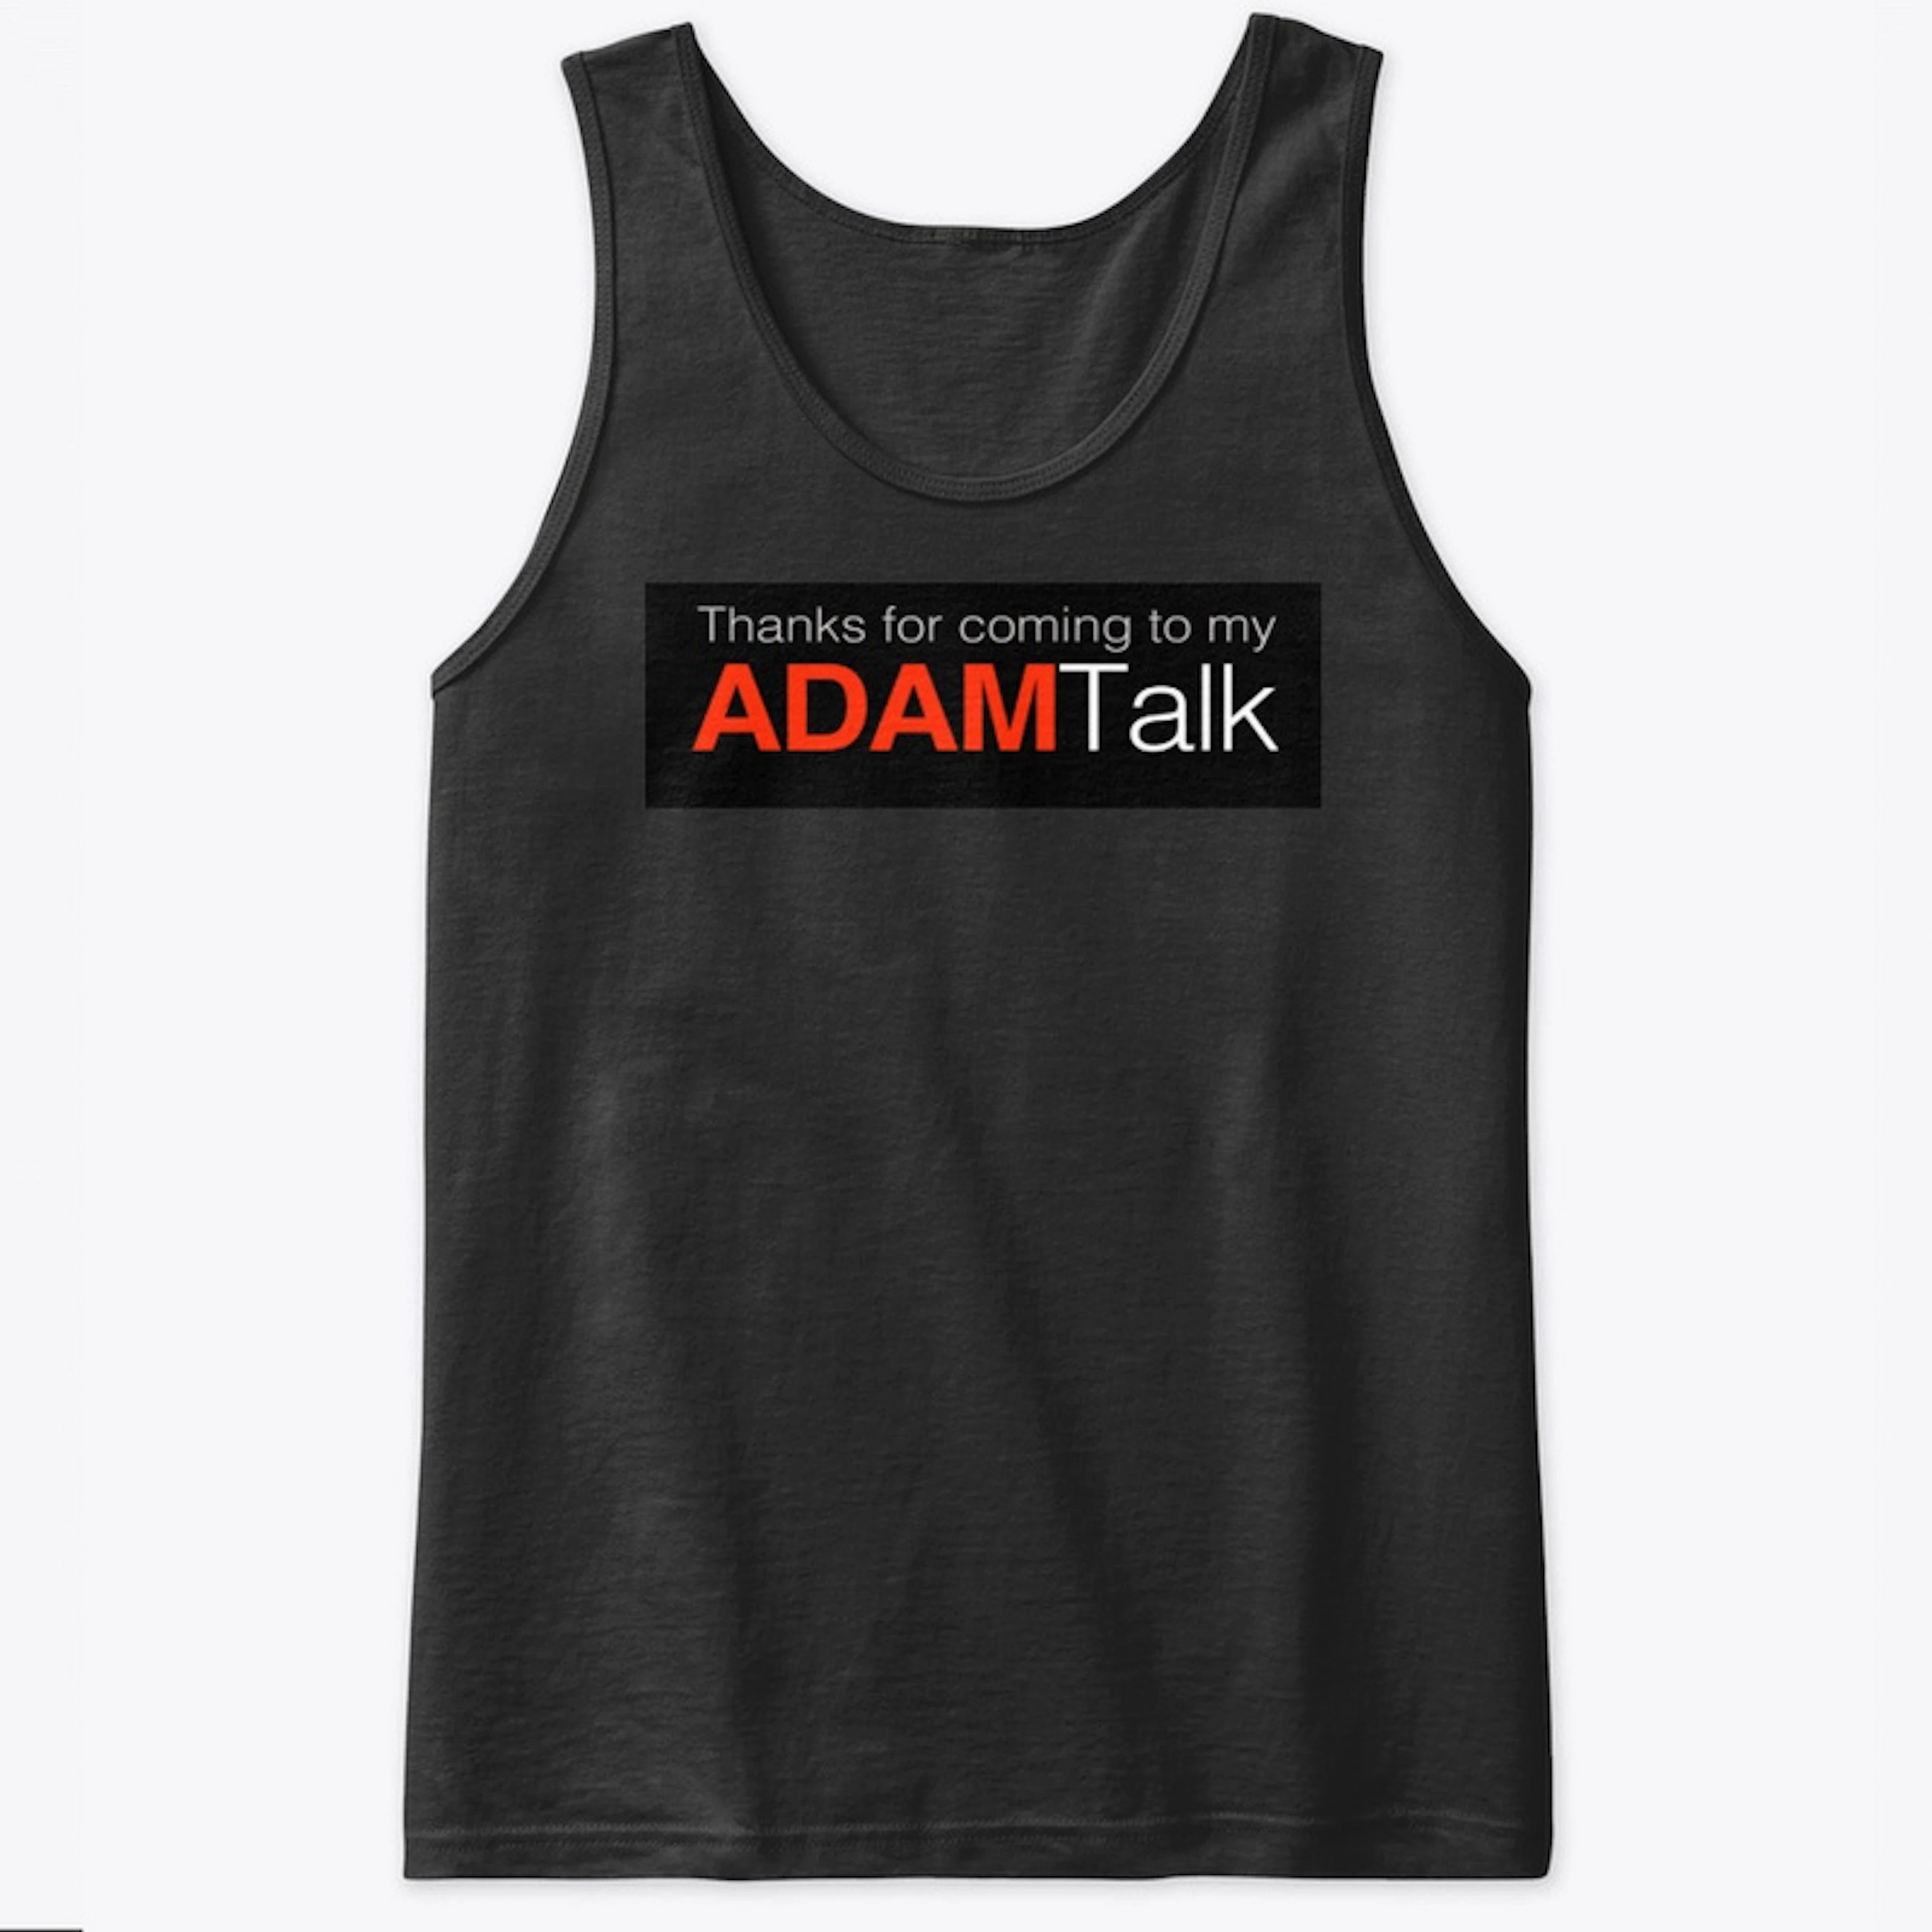 My Adam Talk